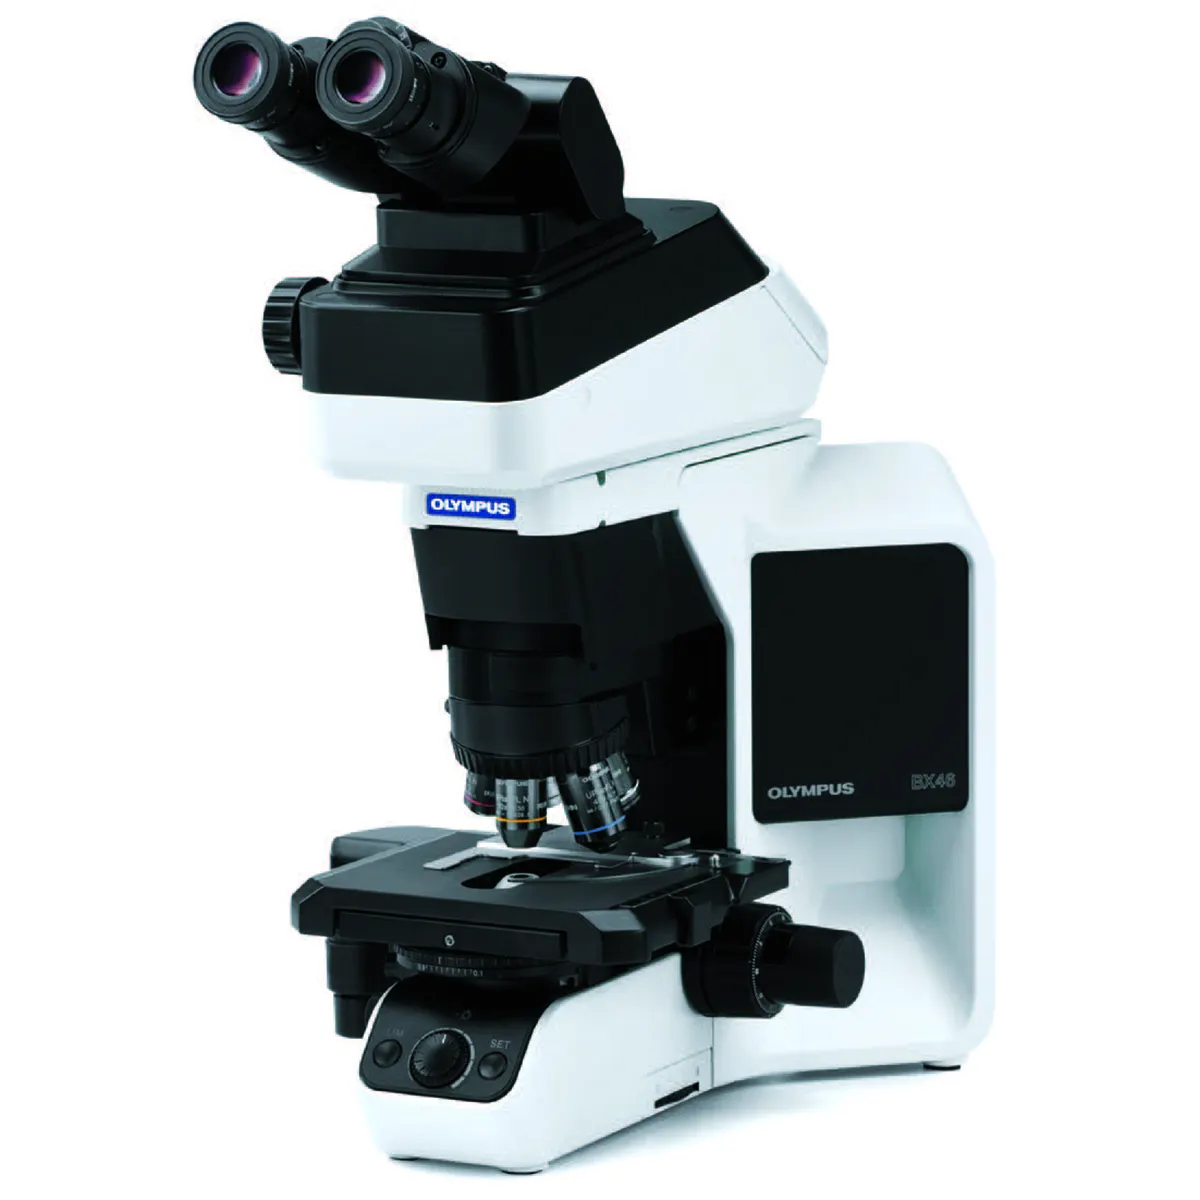 Hot sales 400x Polarisieren des Trin okular mikroskop Tragbares metall urgisches Mikroskop für die Element analyze